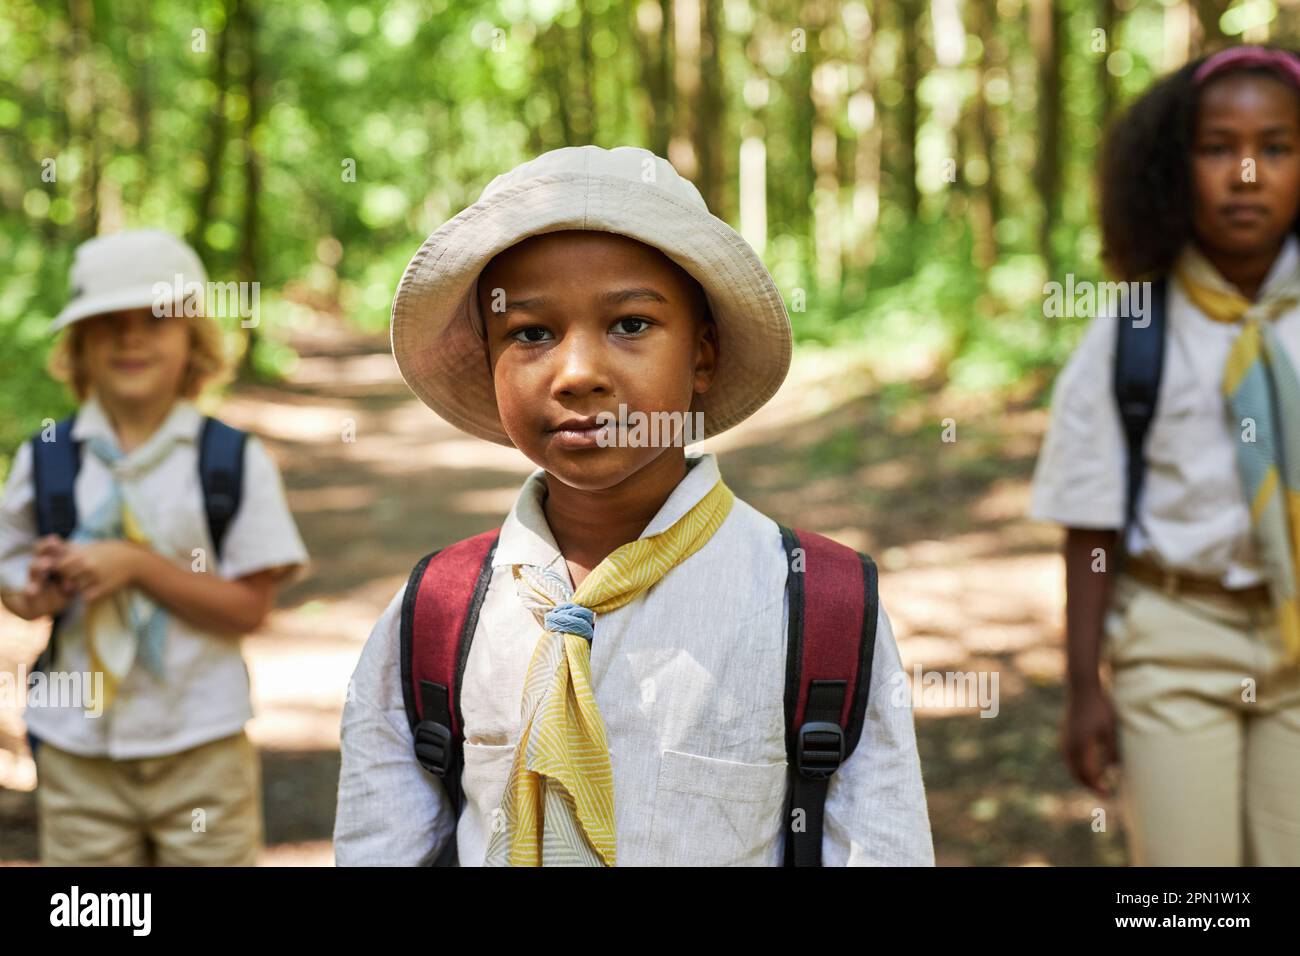 Portrait de jeune garçon noir à la taille en tant que scout de garçon portant uniforme à l'extérieur dans la forêt Banque D'Images